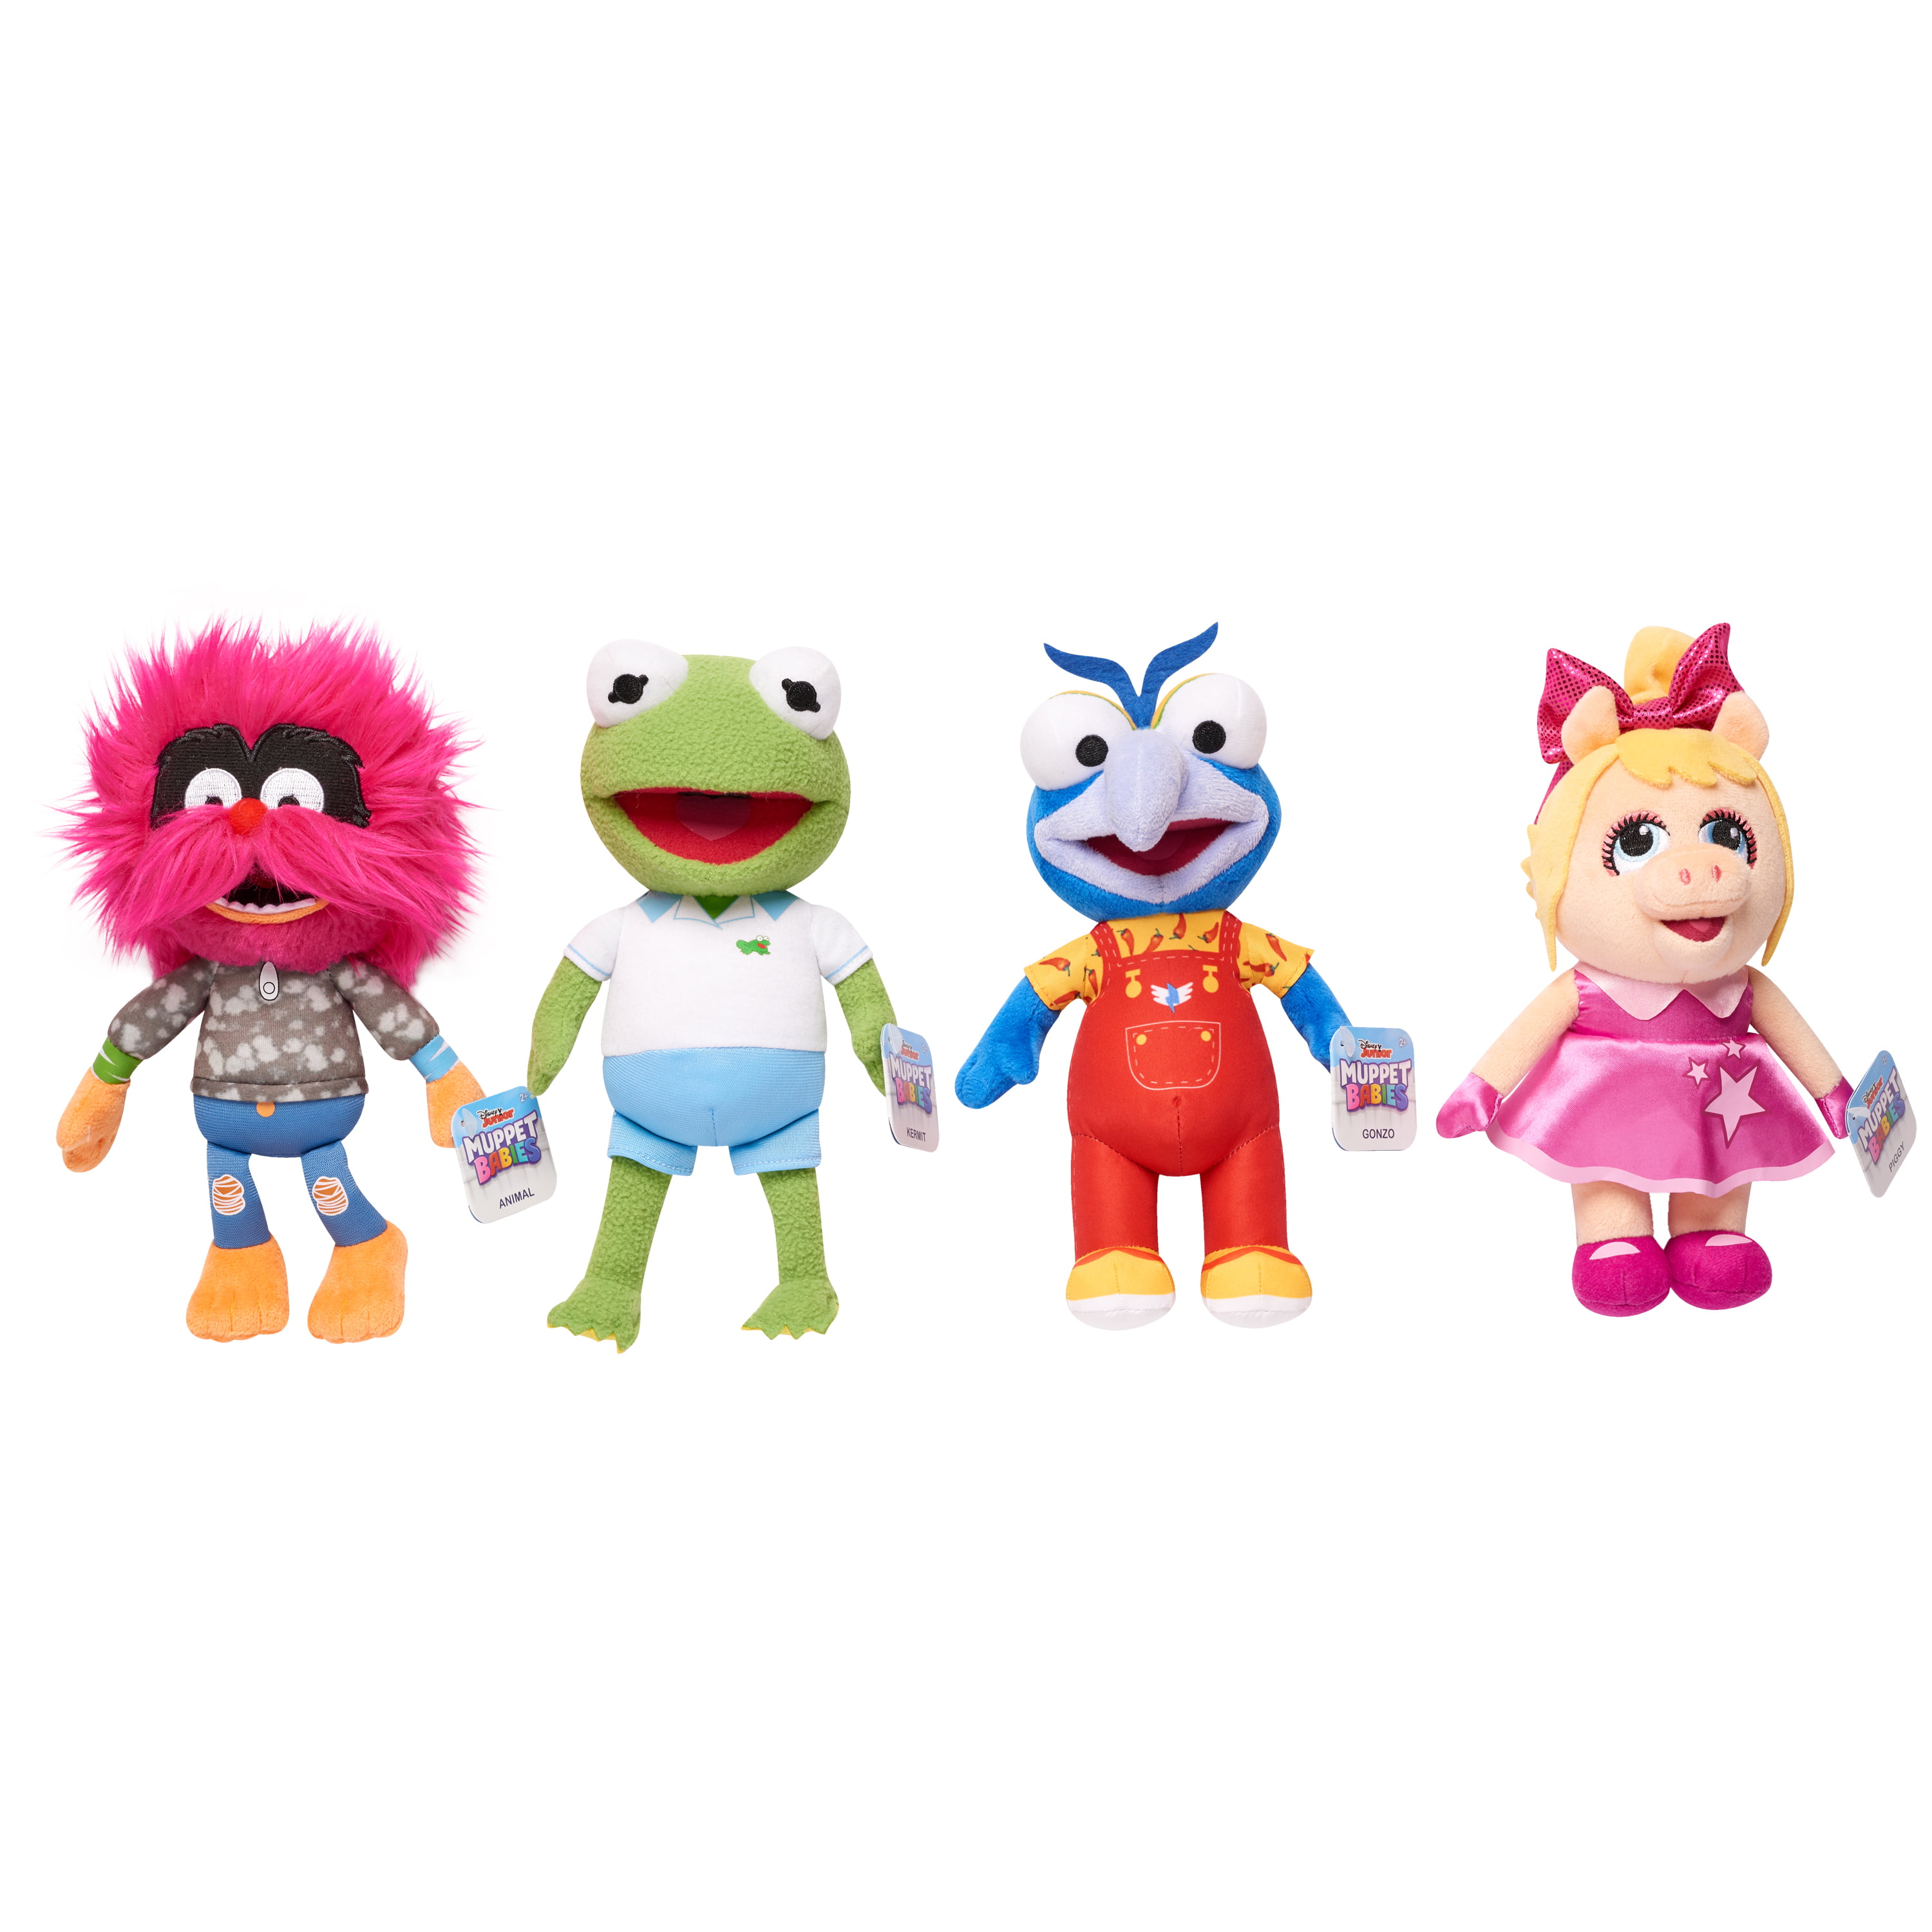 animal muppet babies toy